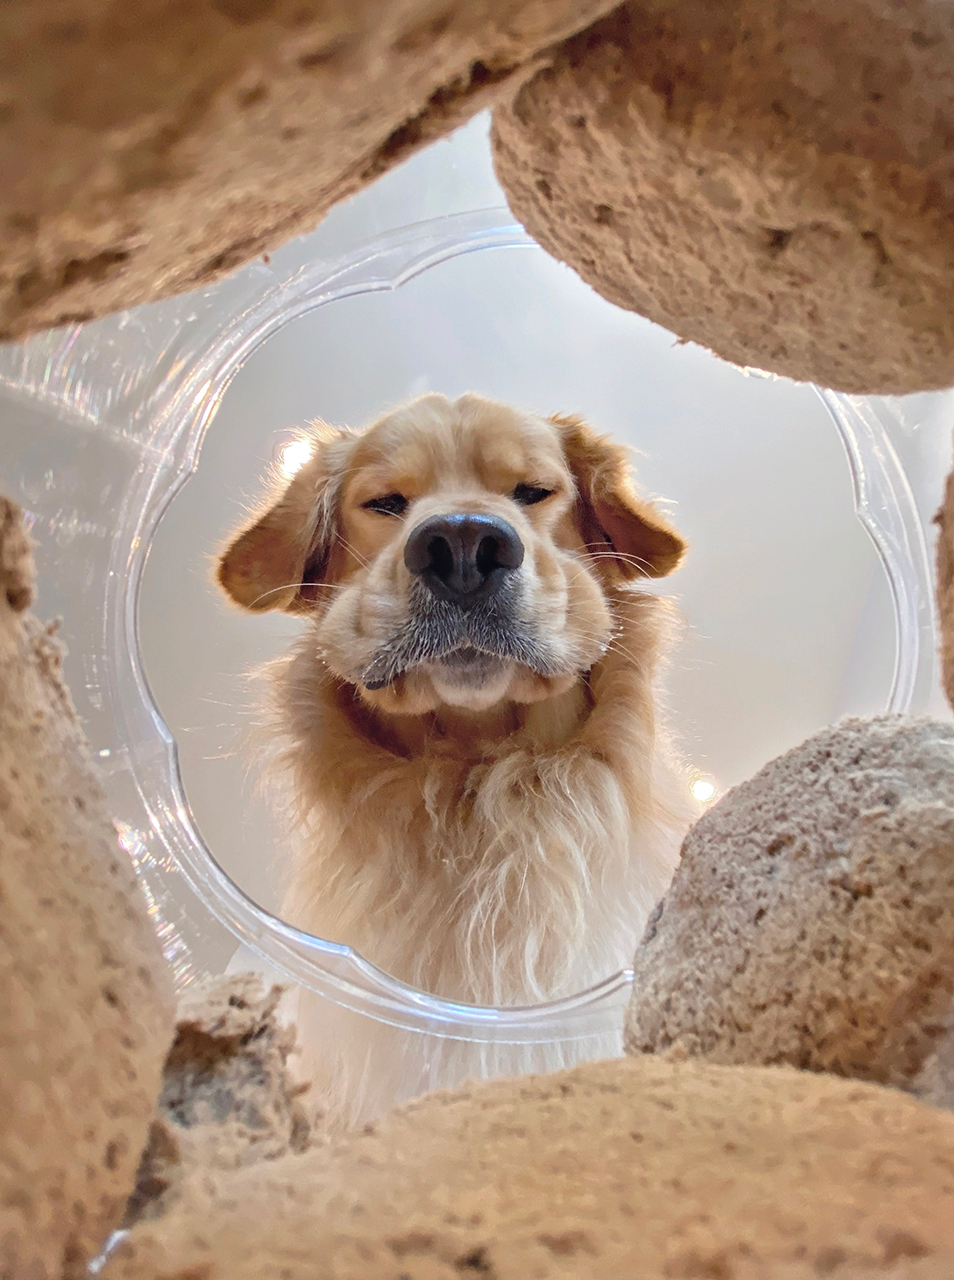 Финалисты фотоконкурса домашних животных Comedy Pet Photography Awards 2020 Животные